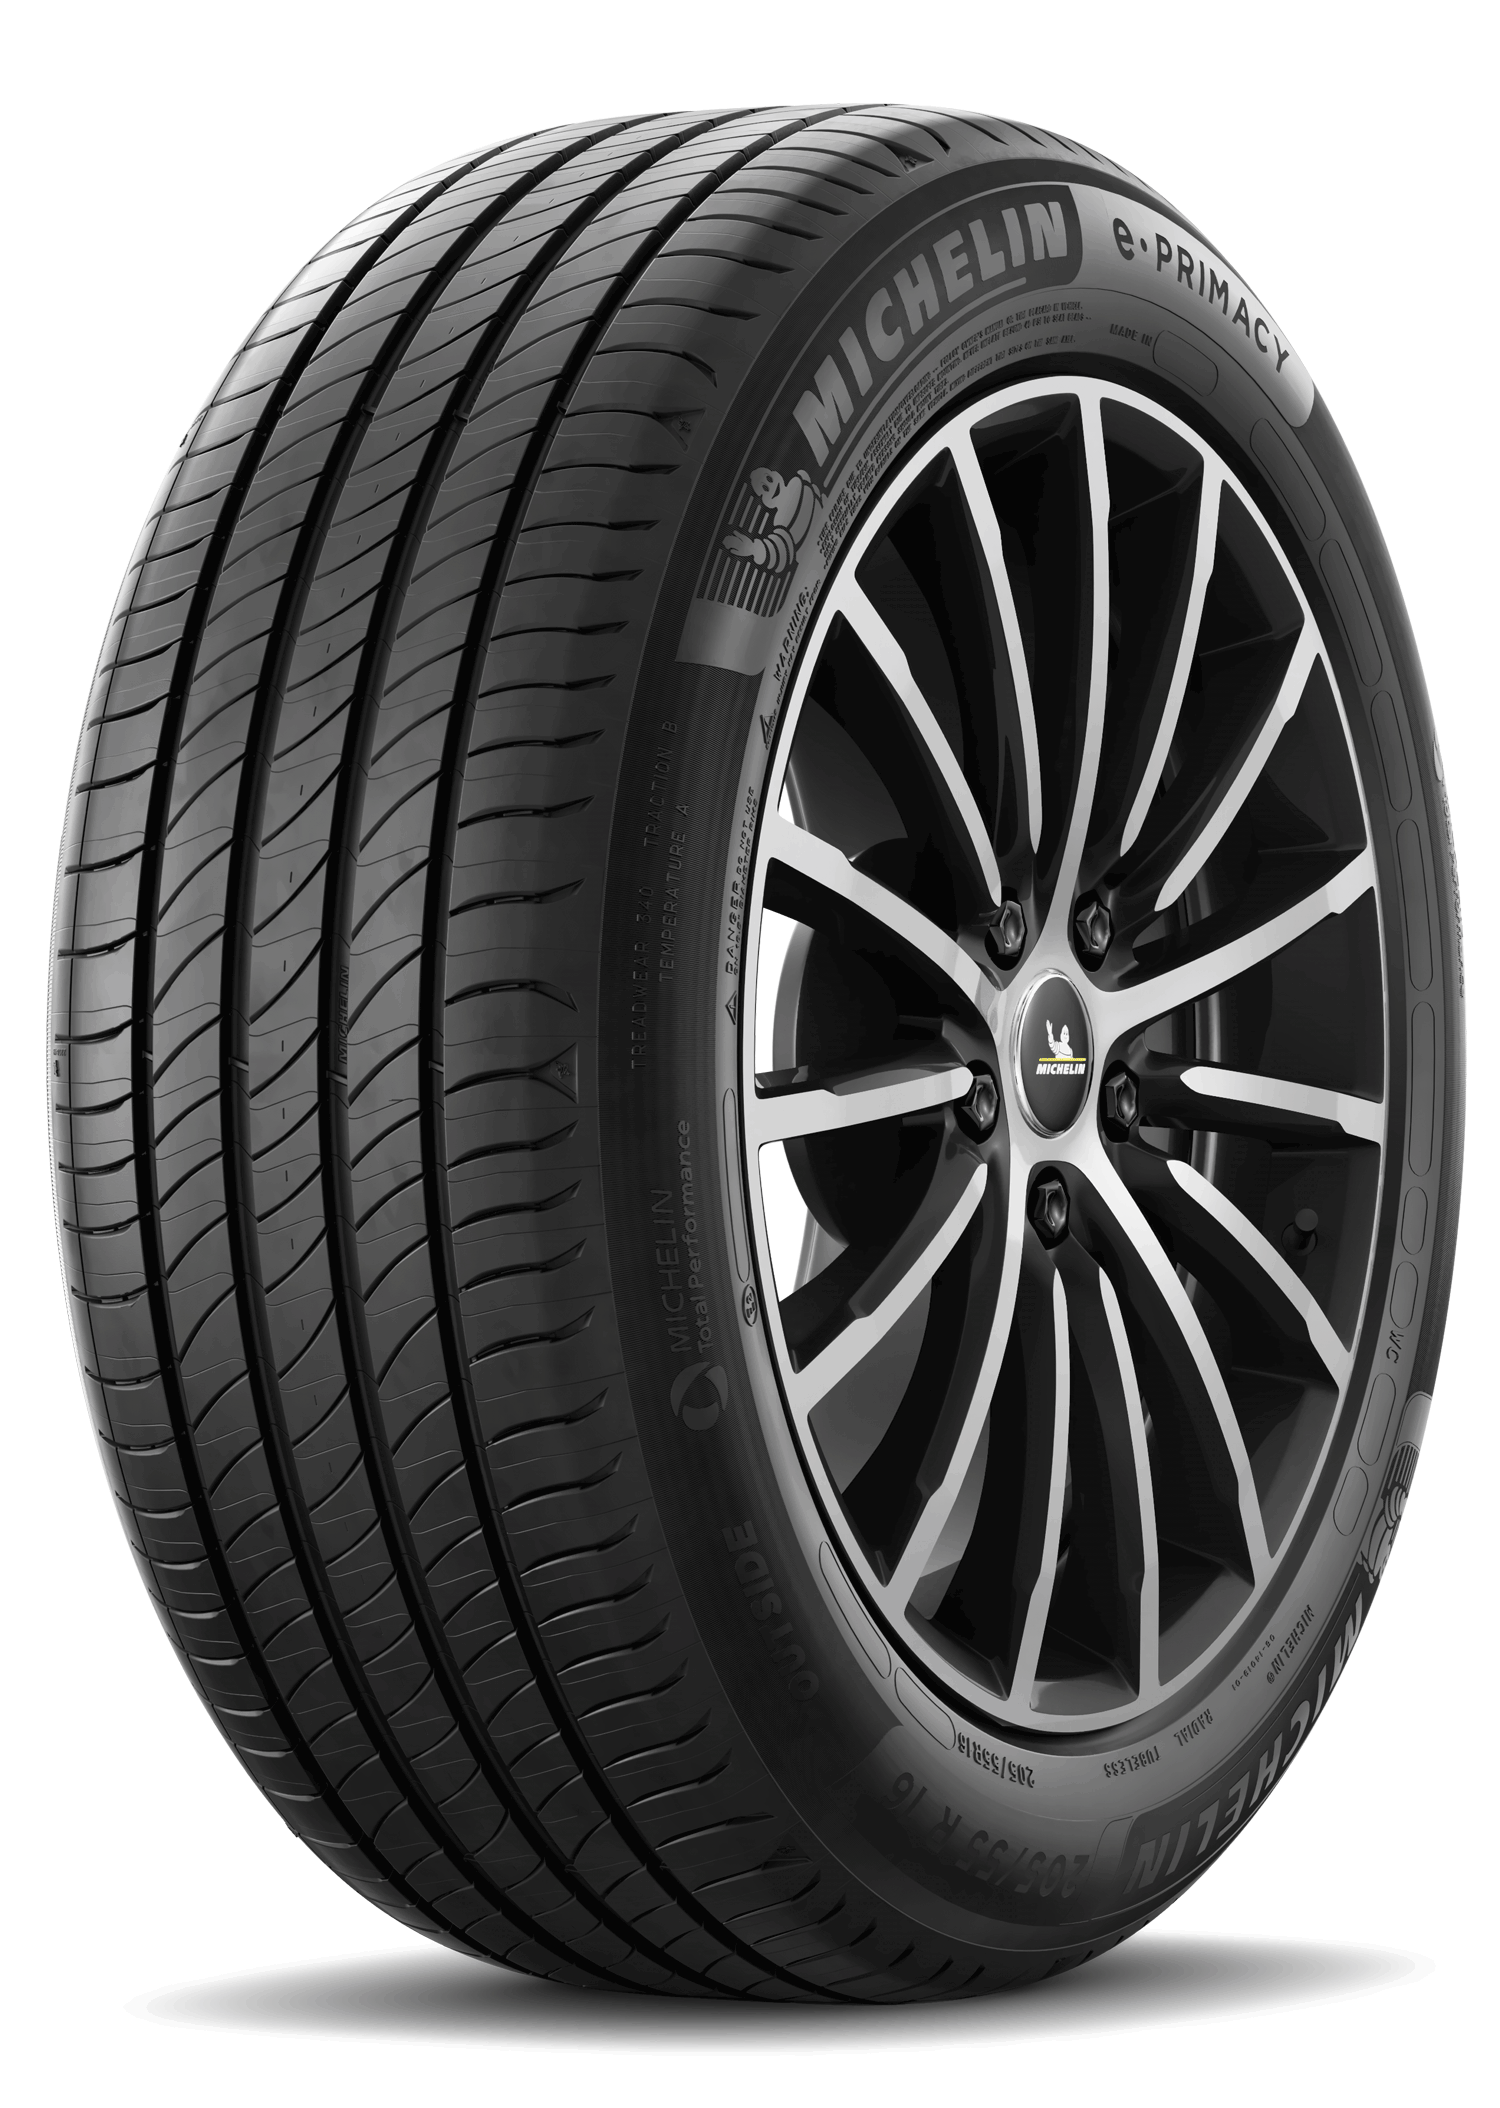 Gomme Nuove Michelin 215/60 R16 95H E PRIMACY pneumatici nuovi Estivo